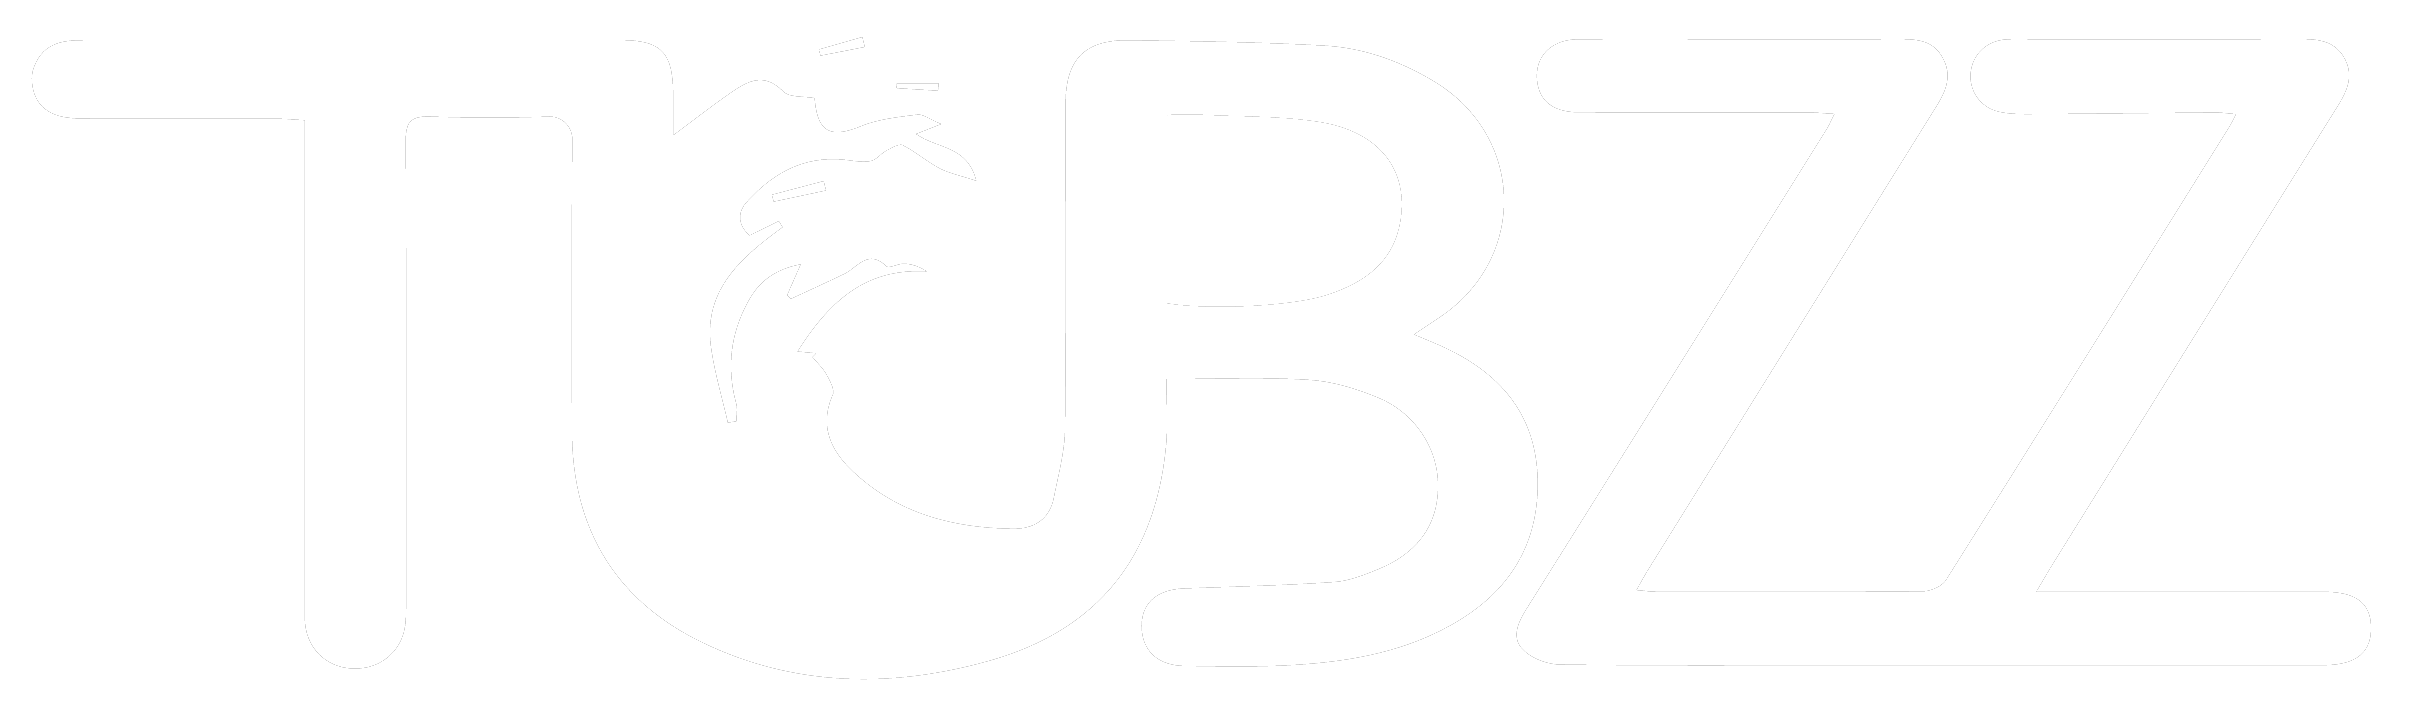 White Tubzz Logo